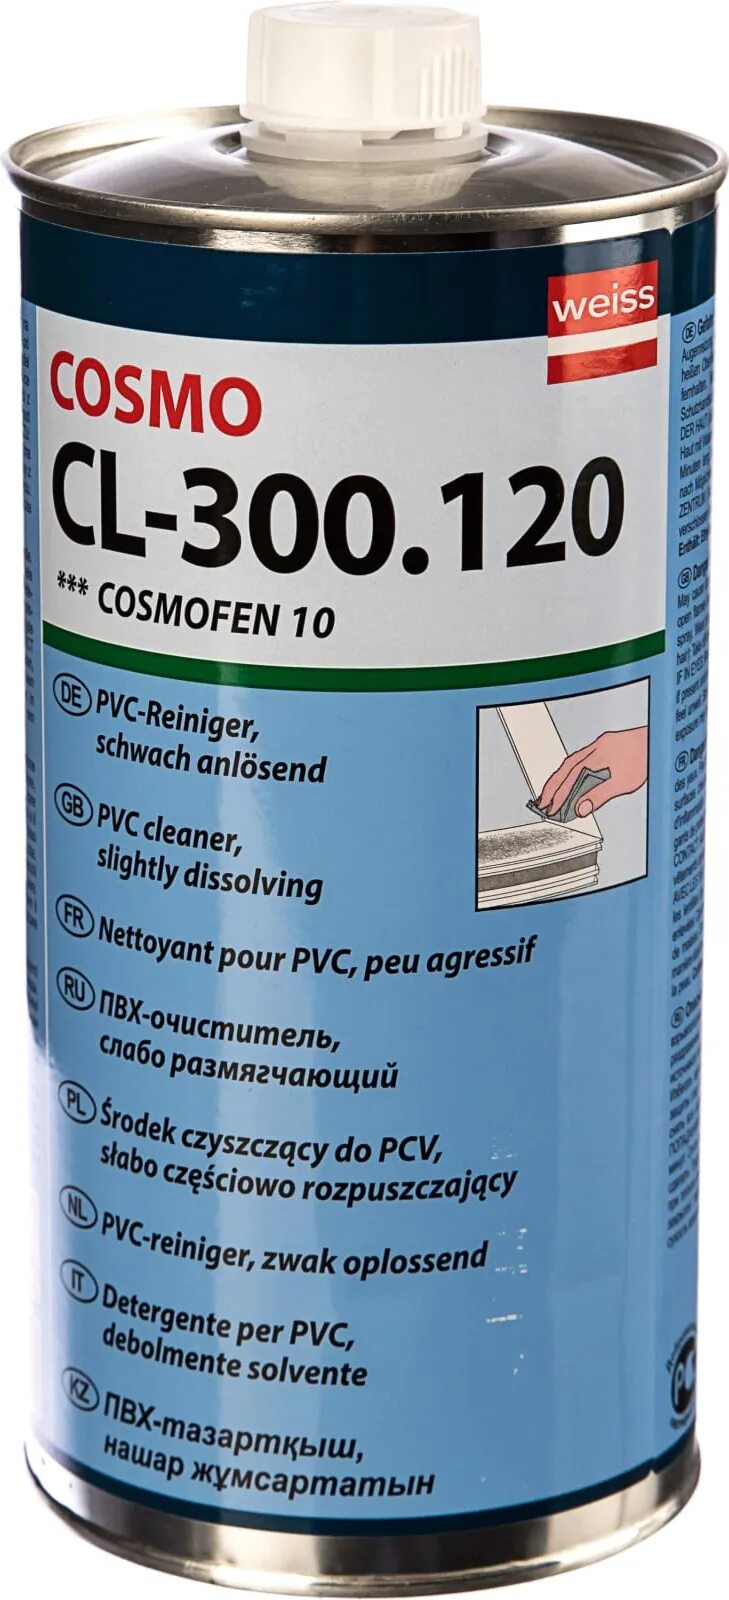 Космофен растворитель. Очиститель пластика CL 300.120. Cosmofen 10 очиститель. Очиститель для ПВХ Cosmofen 10 1 л CL-300.120. Очиститель Cosmofen CL-300.130.